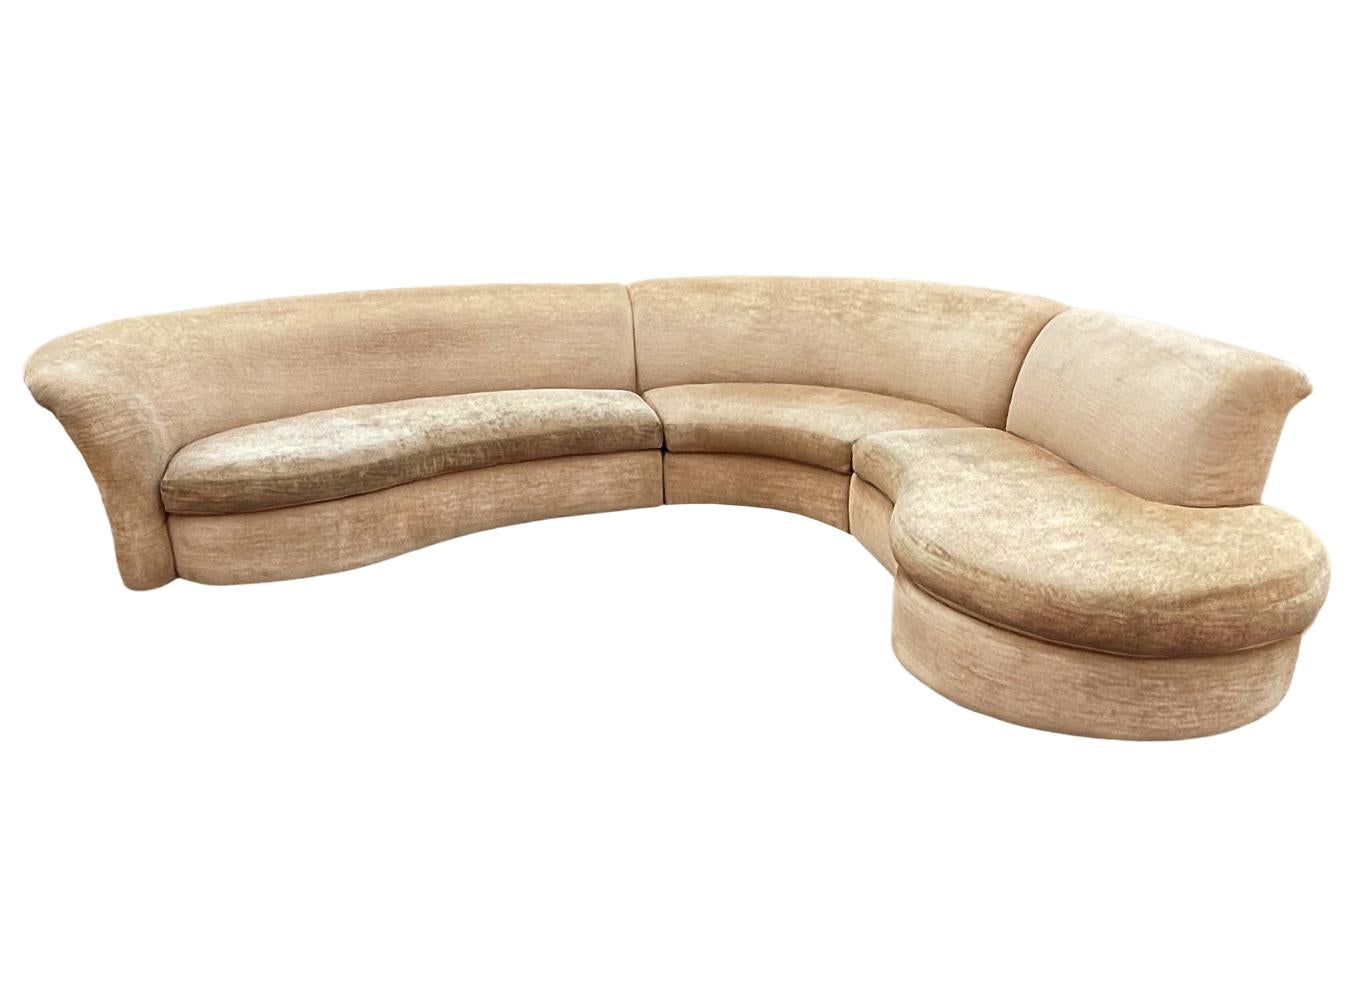 Un grand canapé sectionnel vintage 3 pièces avec une forme magnifique. Il comporte 3 sections verrouillables et présente un aspect sculptural. Les pieds sont des cylindres en bois à profil bas. Le tissu est d'origine et usé. Récupération de base